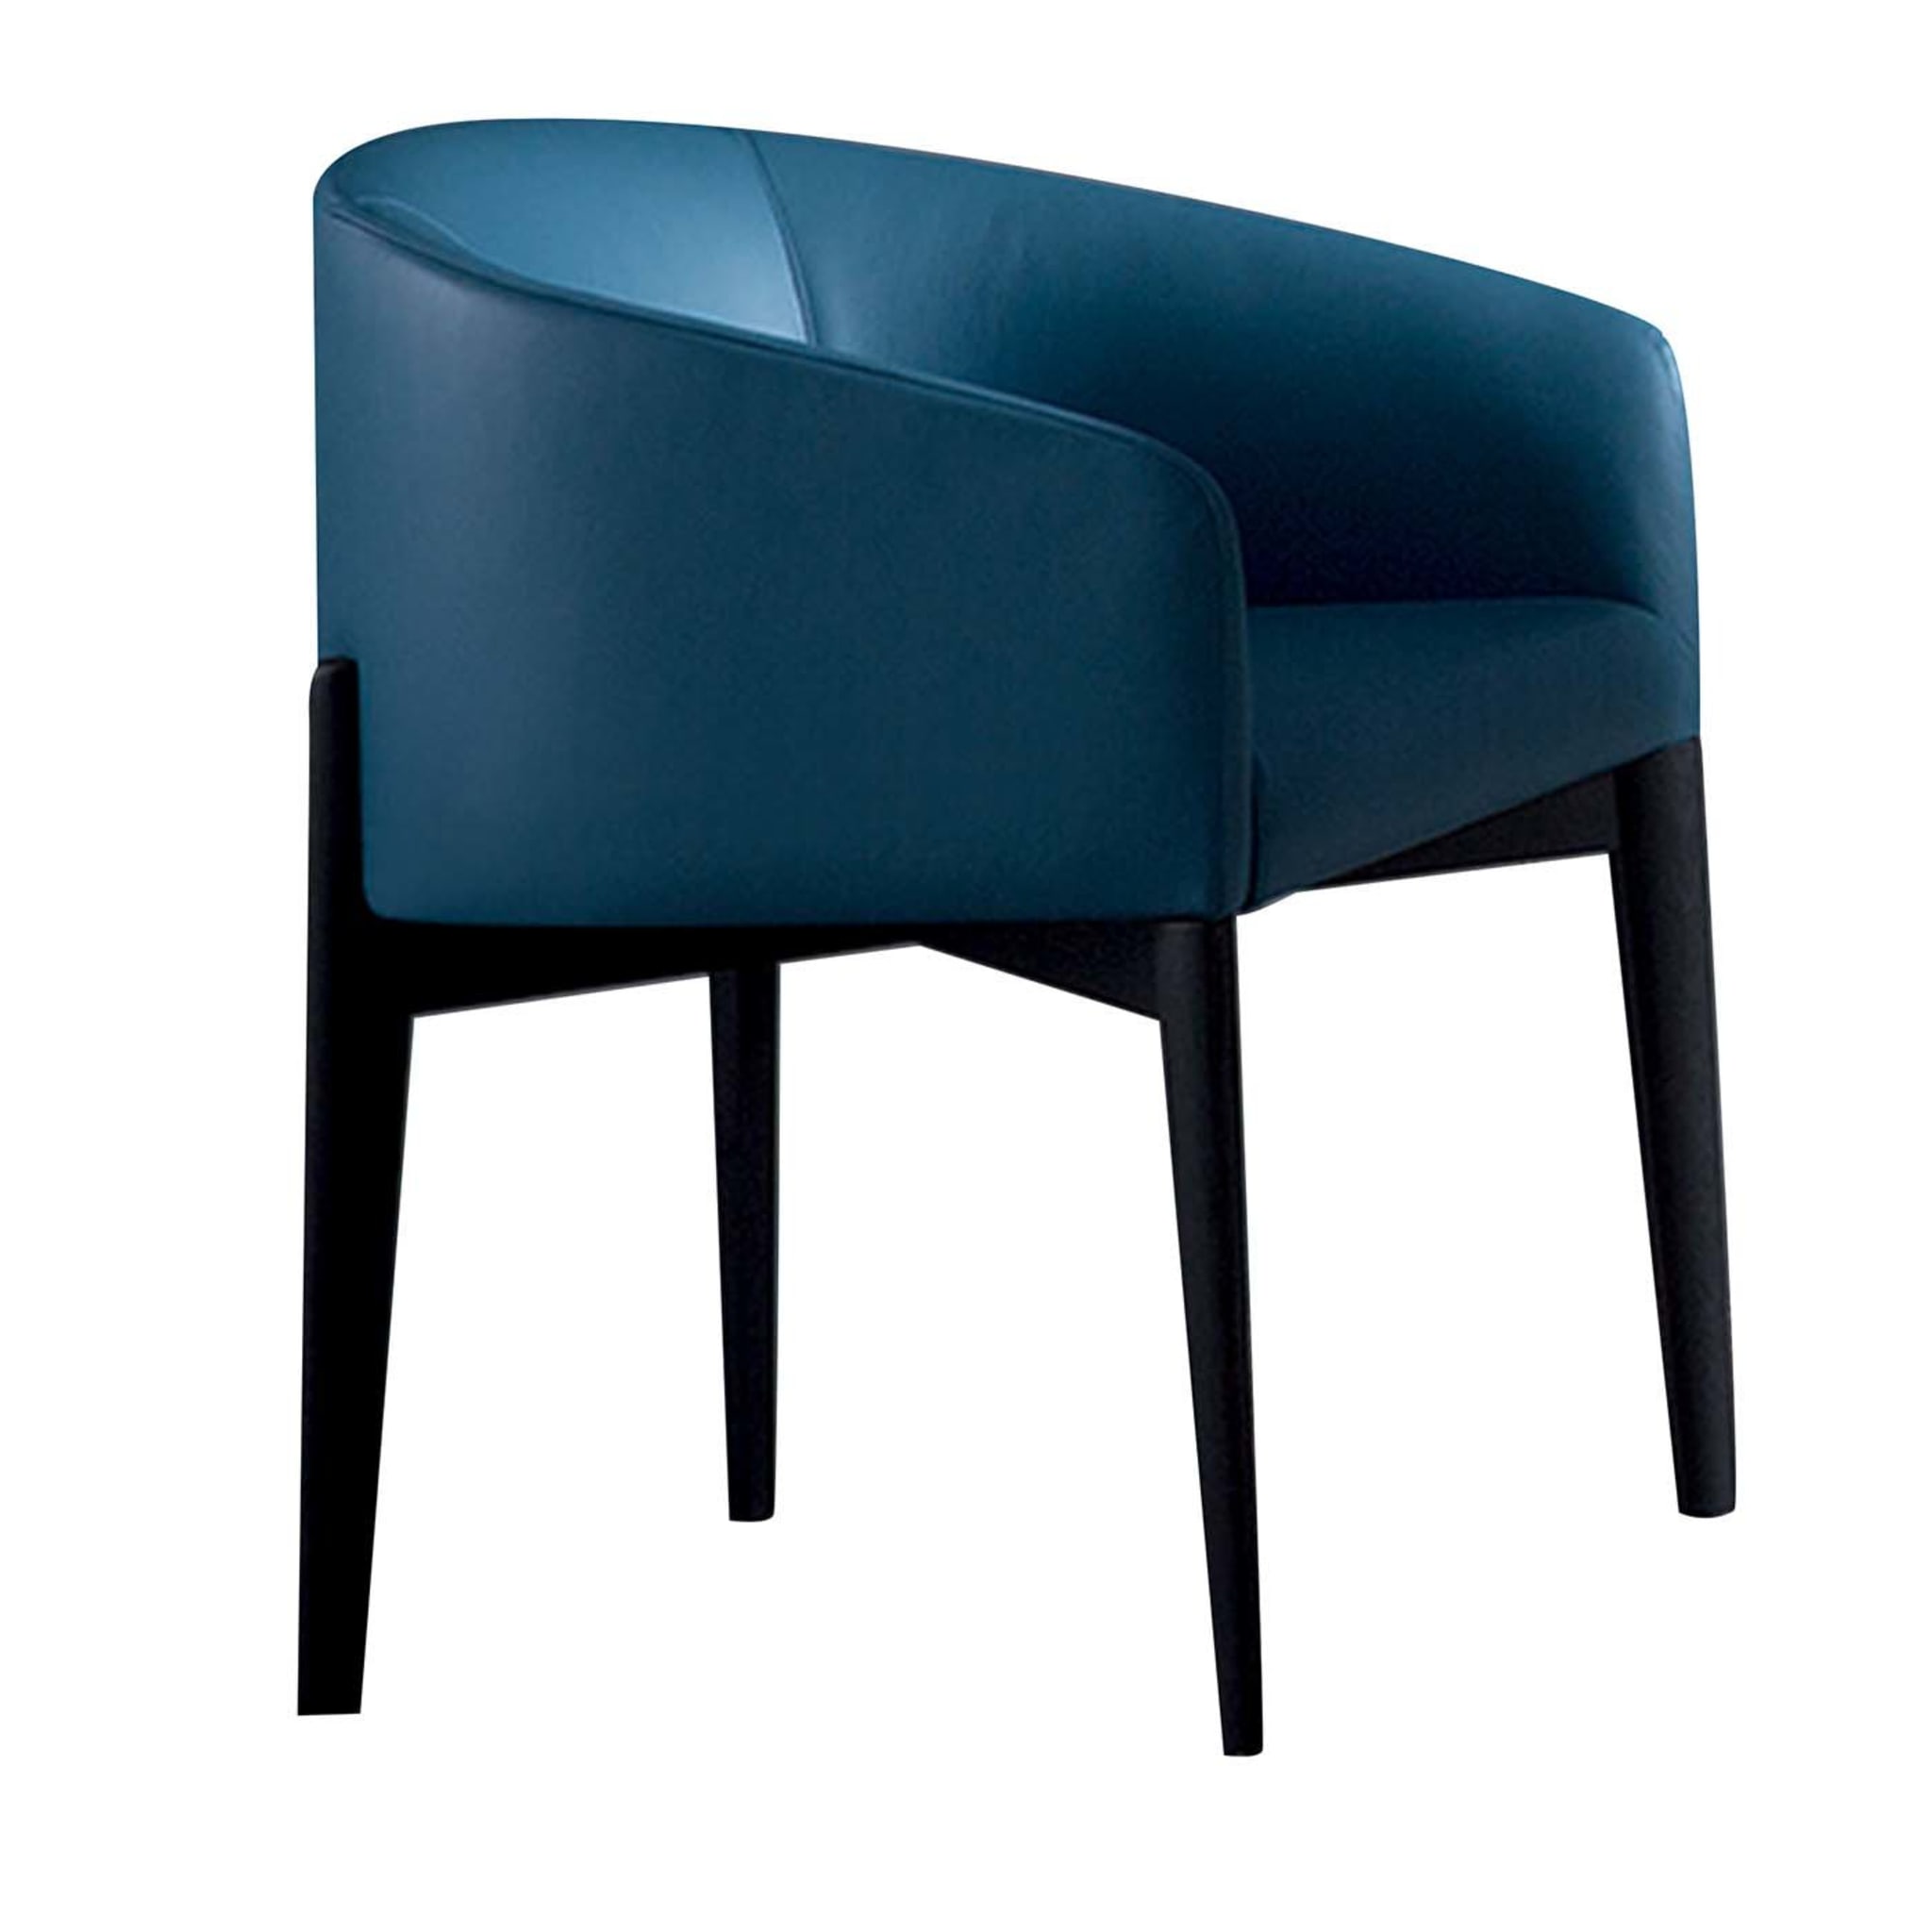 Peggy Blue Chair - Main view